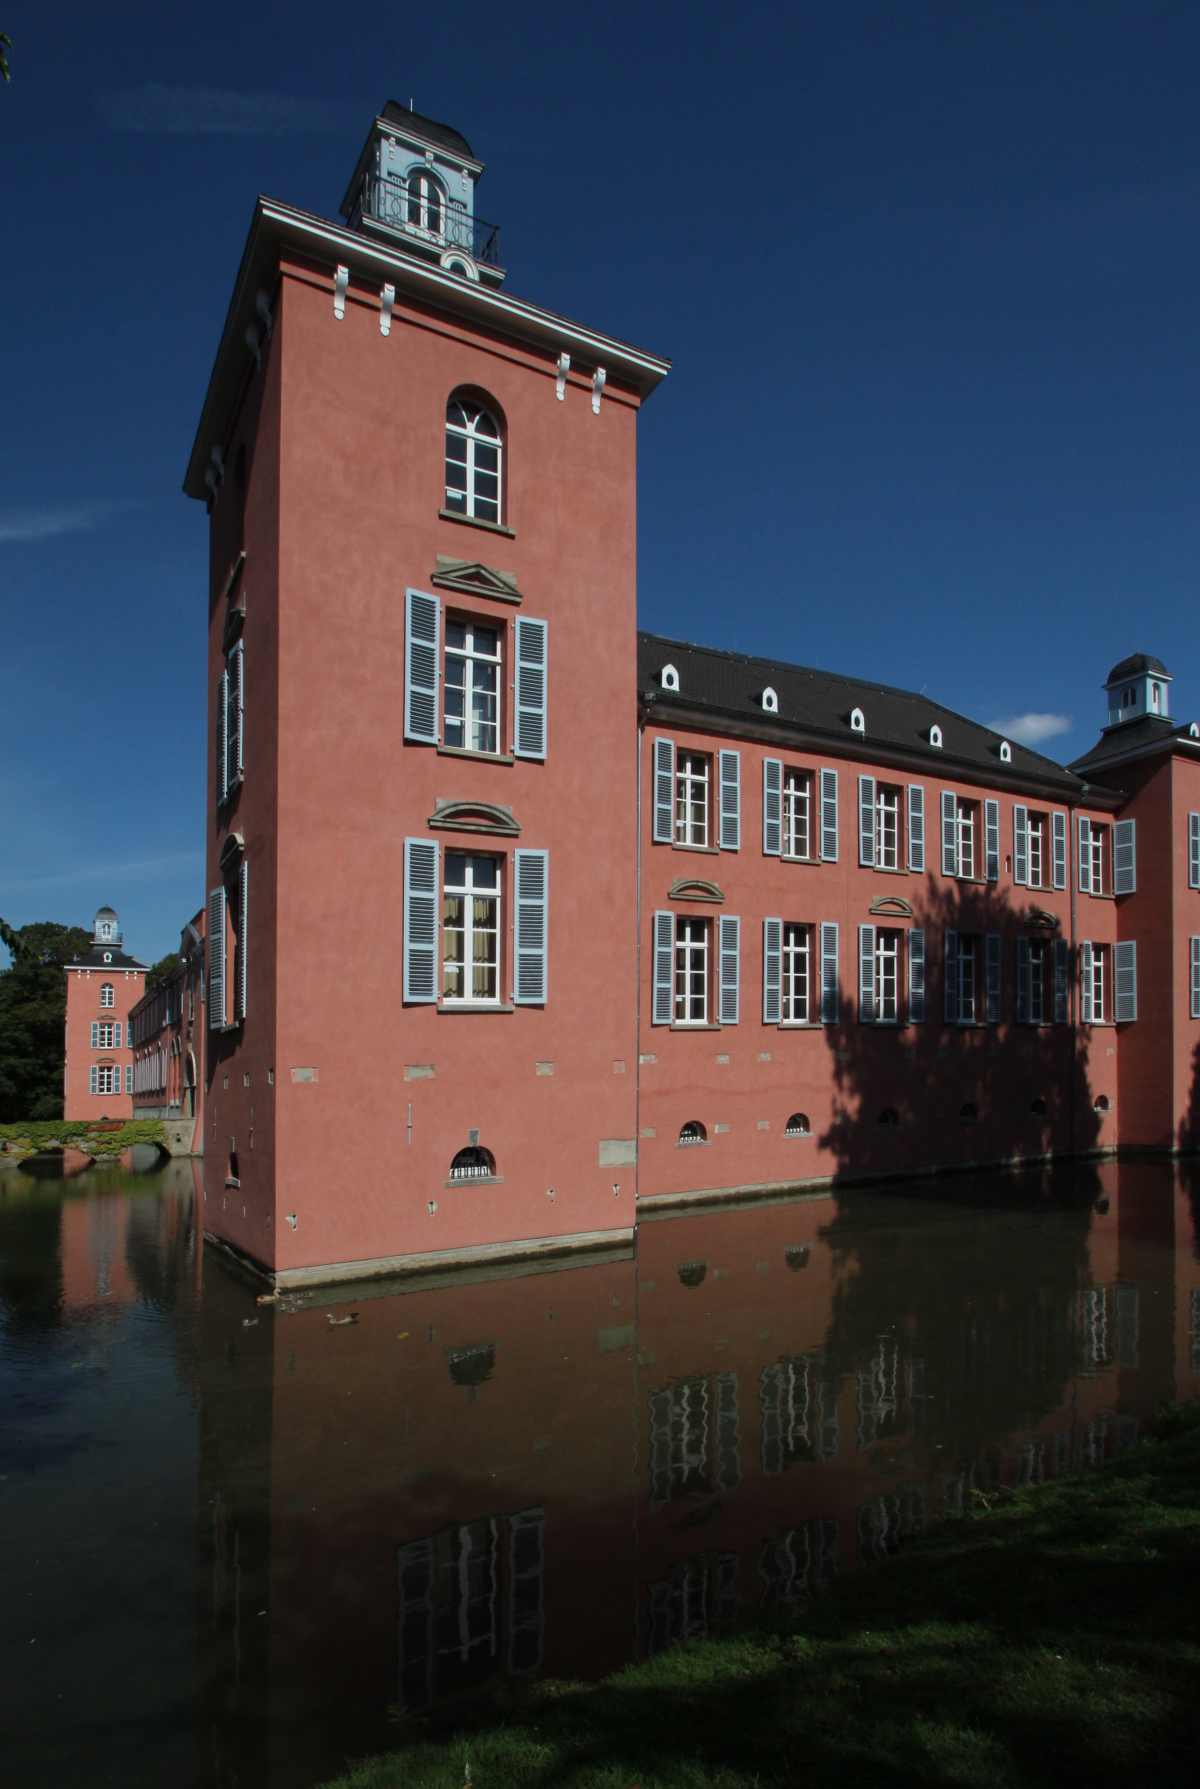 Das im Norden von Düsseldorf gelegene Schloss Kalkum zählt zu den bedeutendsten Wasser-schlössern in NRW. Das Wasser bringt jedoch eine erhöhte Feuchtigkeitsbelastung mit sich, weshalb bei der Sanierung unter anderem ein spezieller Feuchteregulierungsputz